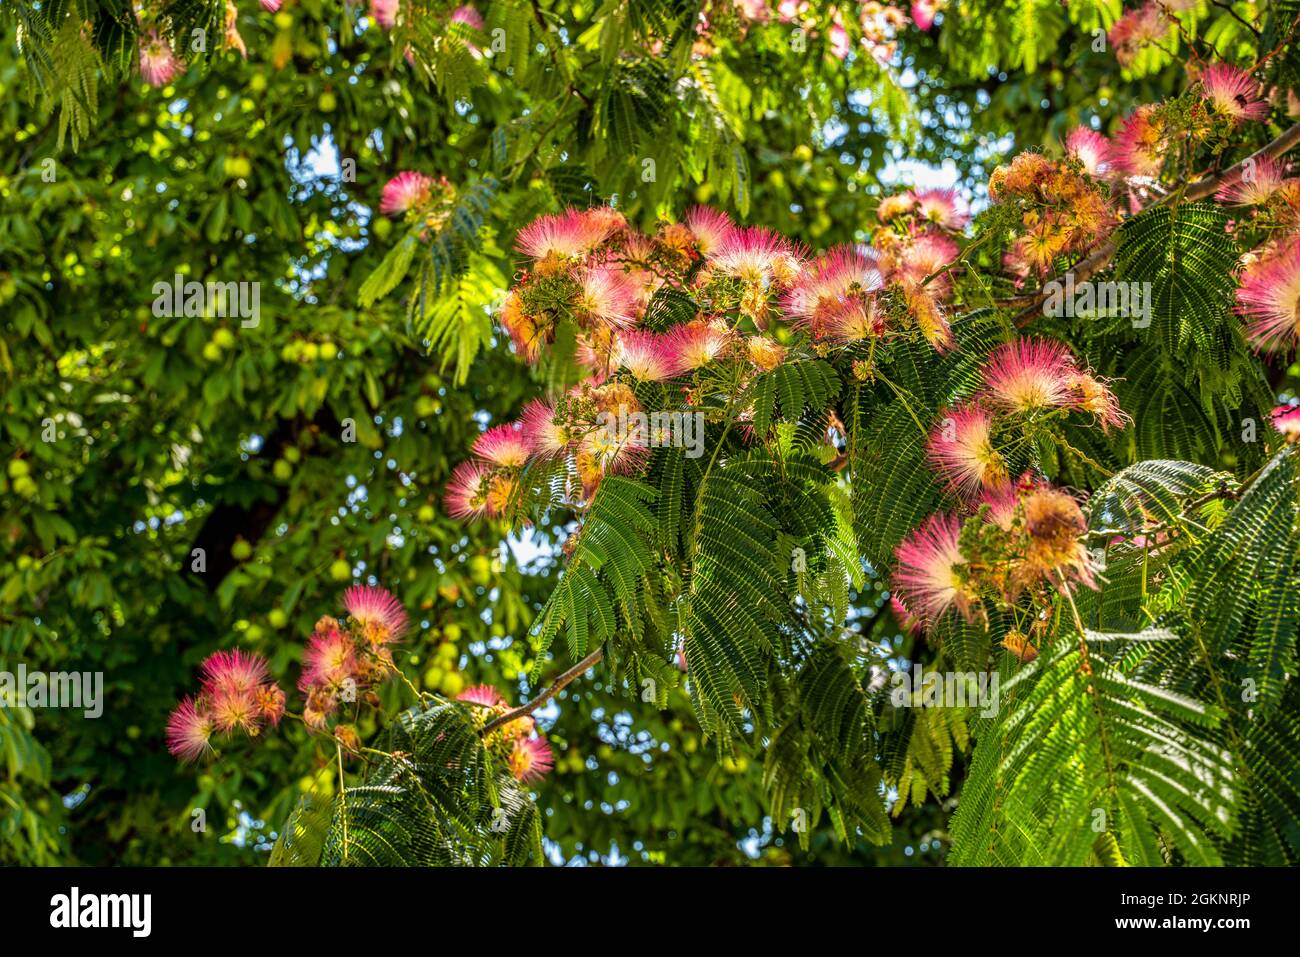 Floraison d'acacia japonaise - Albizia julibrissin. Grenoble, région Auvergne-Rhône-Alpes, département de l'isère, France, Europe Banque D'Images